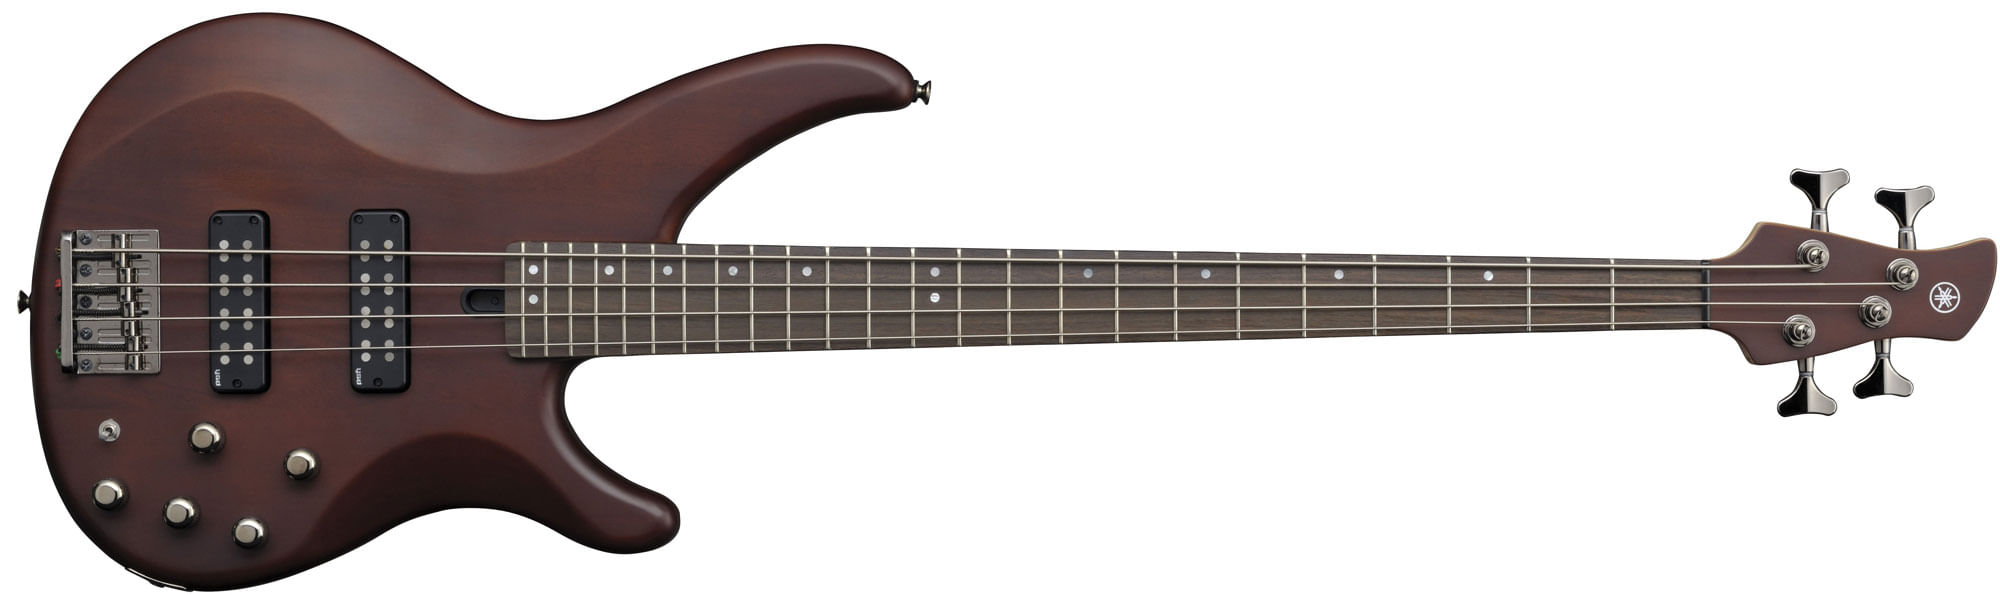 Yamaha TRBX504 Electric Bass Guitar - Translucent Brown